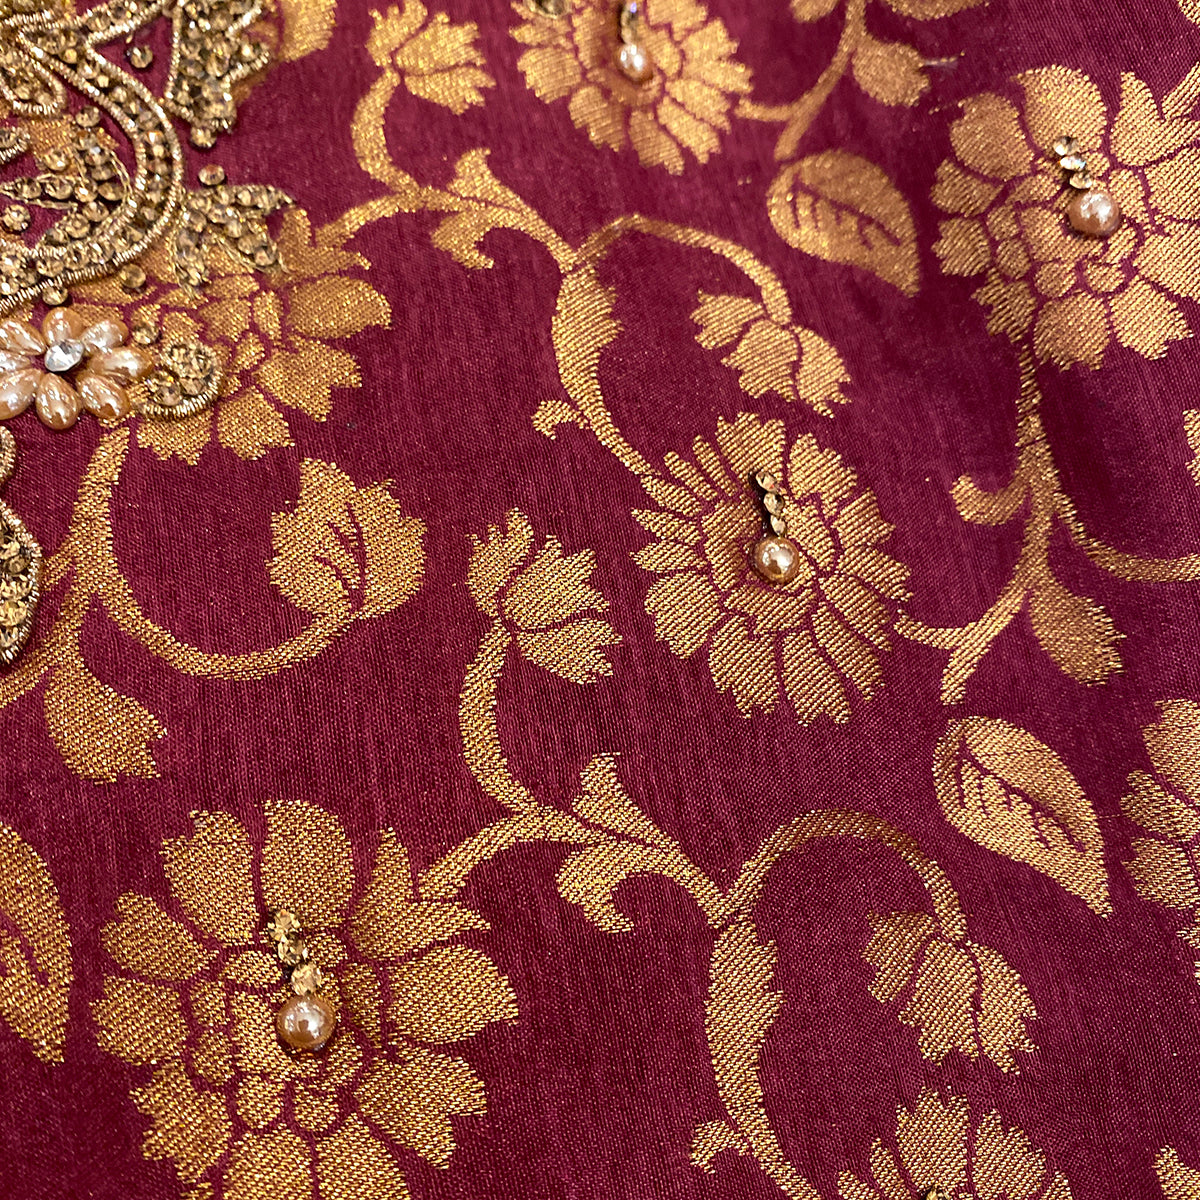 DT Brocade Salwar Sets-3 Colors - Vintage India NYC